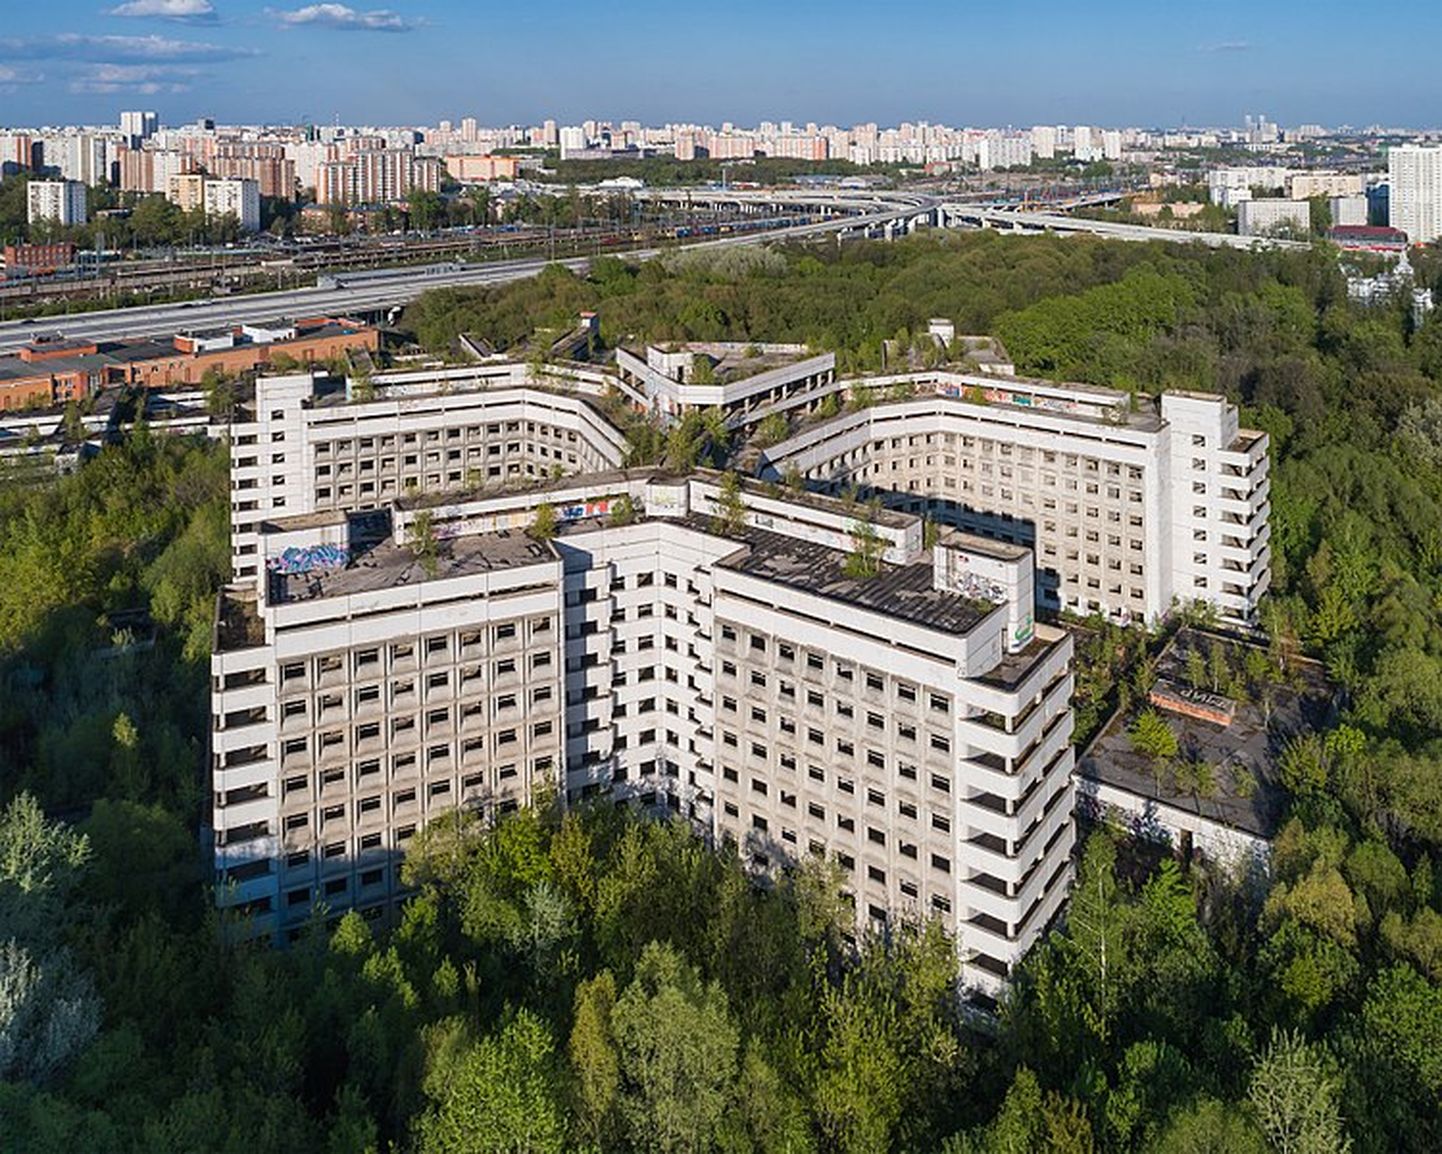 Аэрофото заброшенной больницы в Ховрино, Москва.